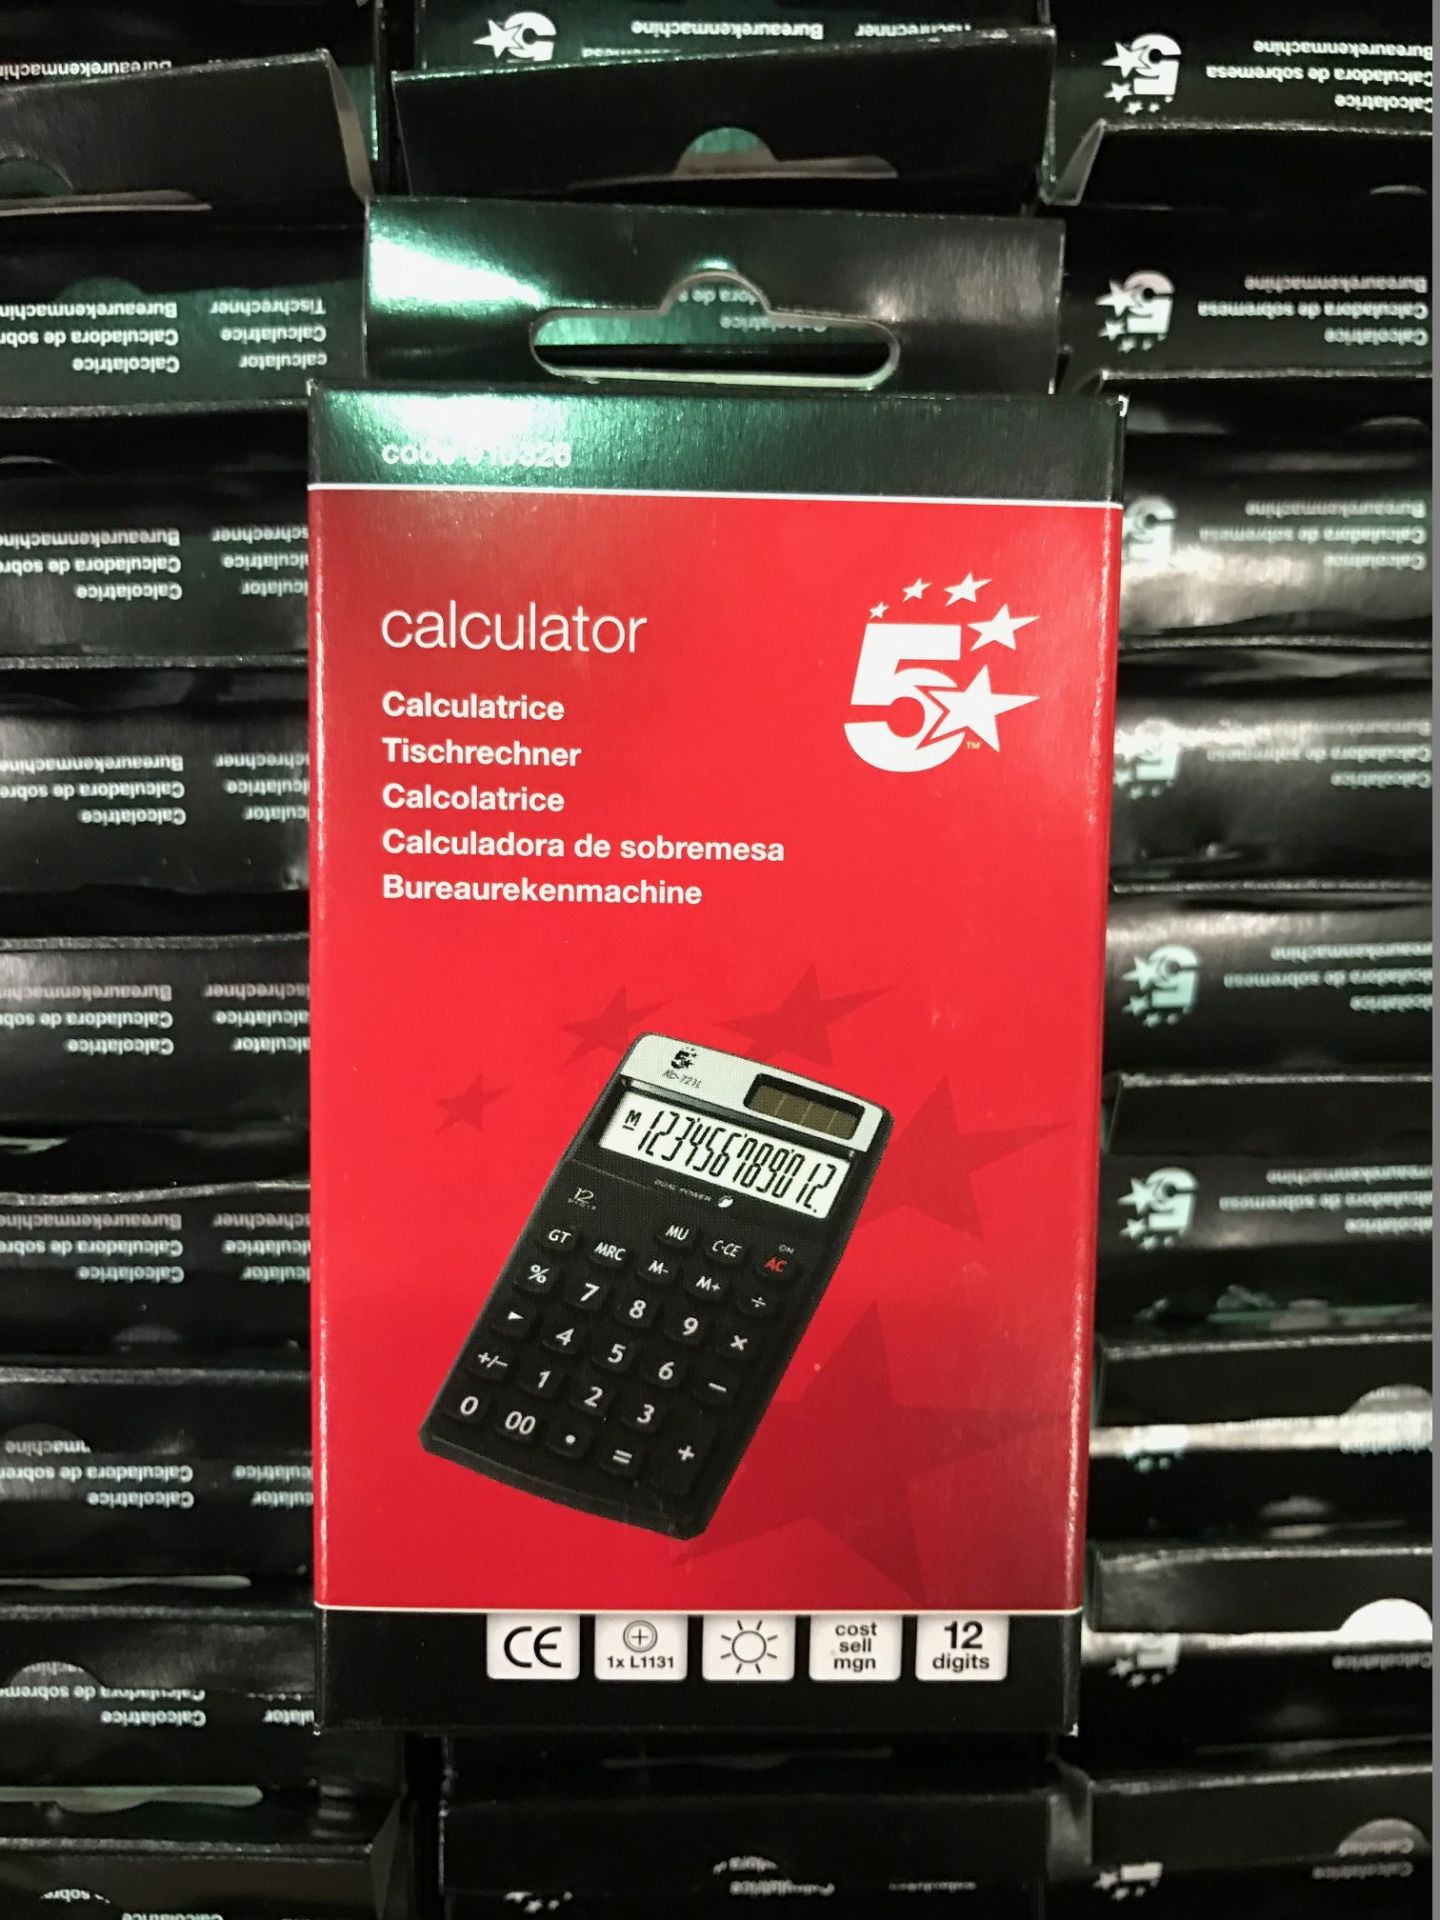 40 x 5 Star HH12D Calculators - RRP £4.99 Each